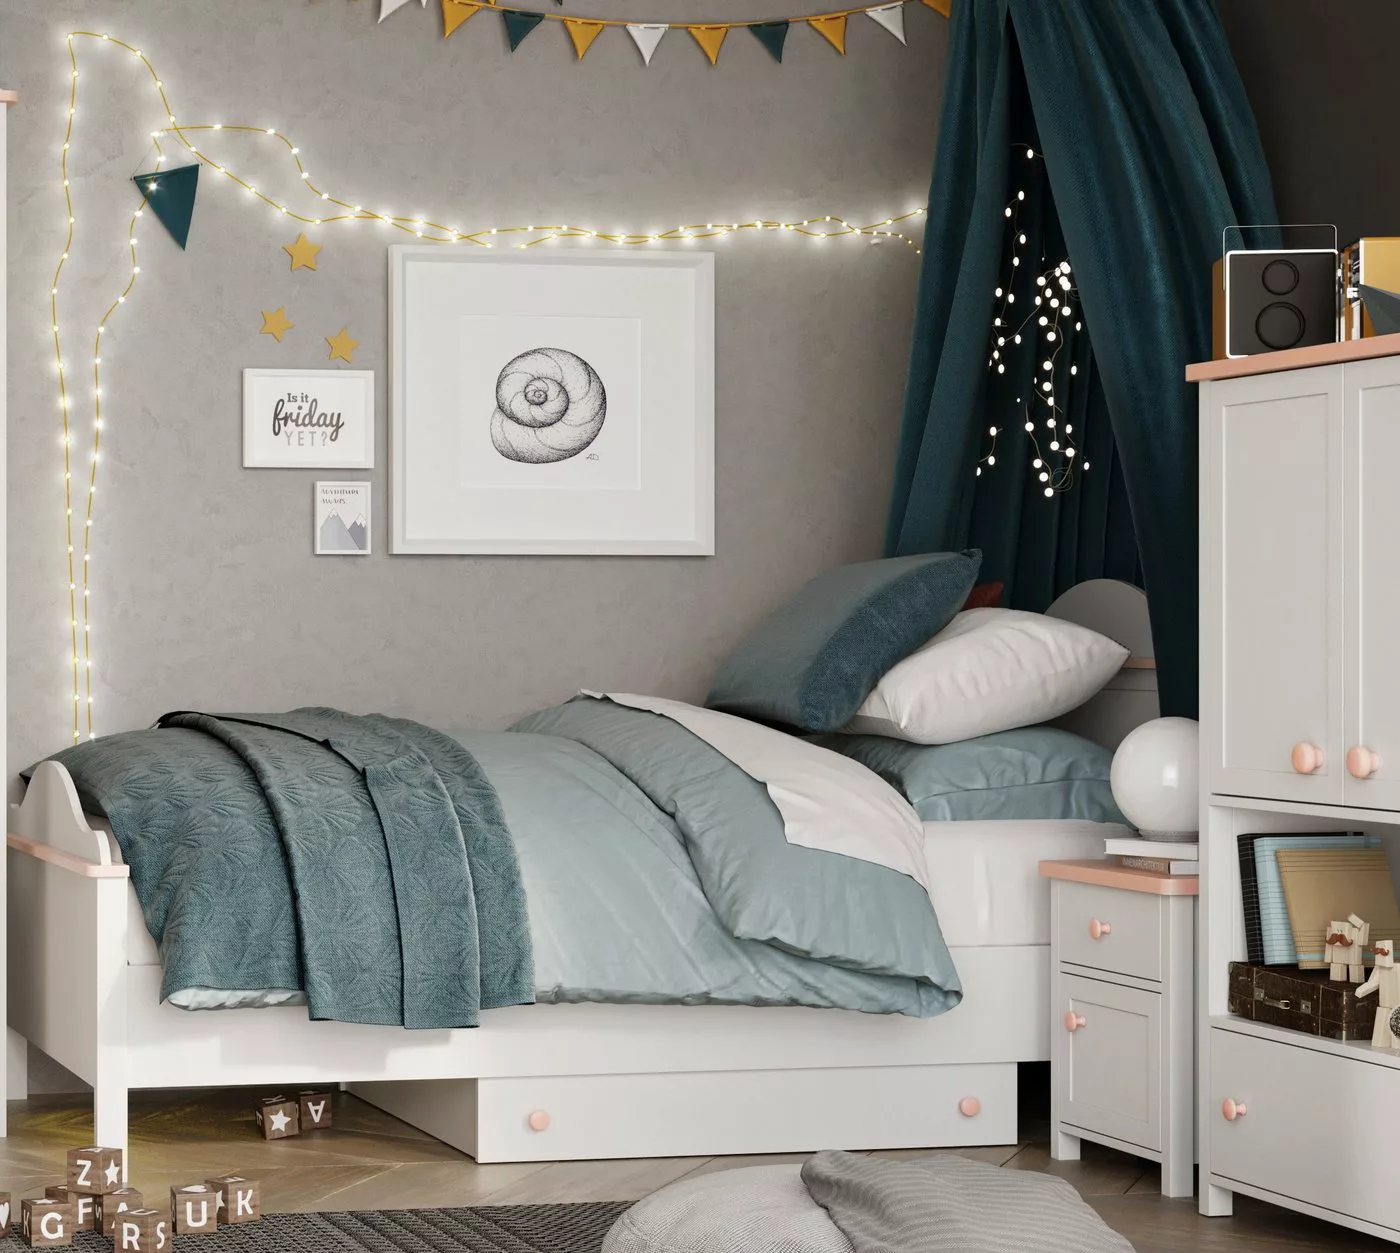 Compleo Bett Kinderbett Mädchenbett LARA mit Matratze und zwei Schubladen, günstig online kaufen